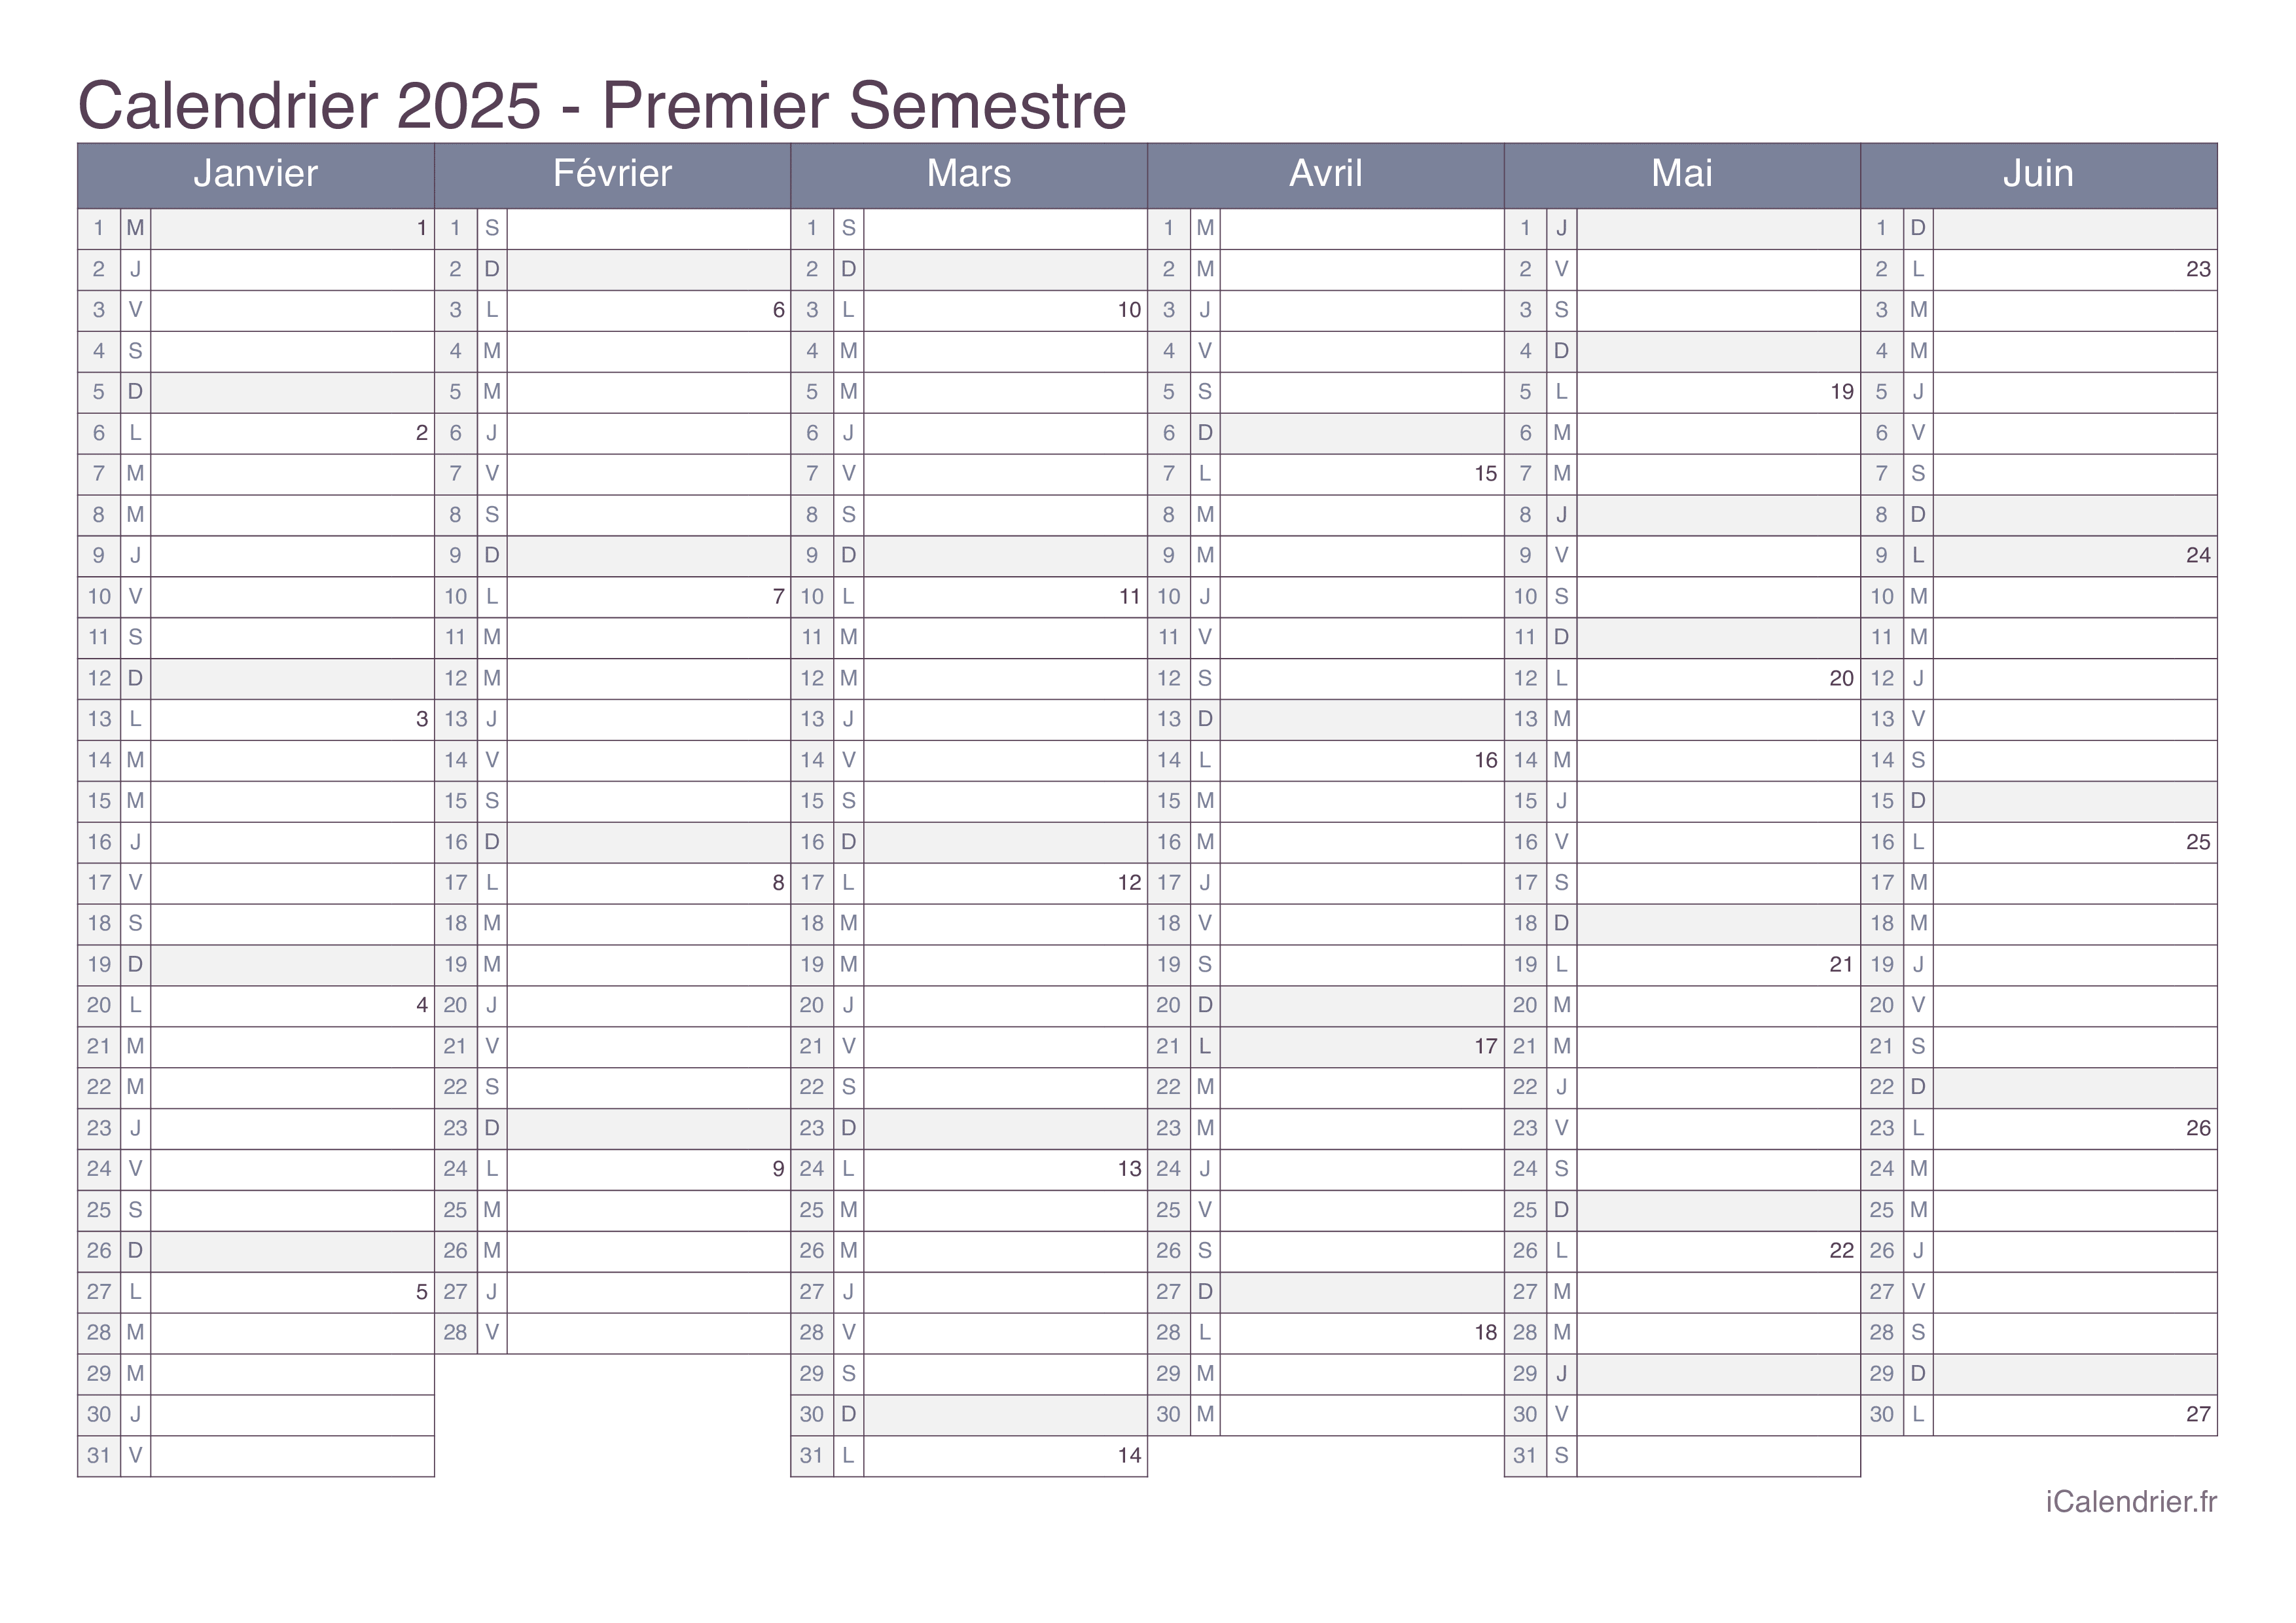 Calendrier par semestre avec numéros des semaines 2025 - Office